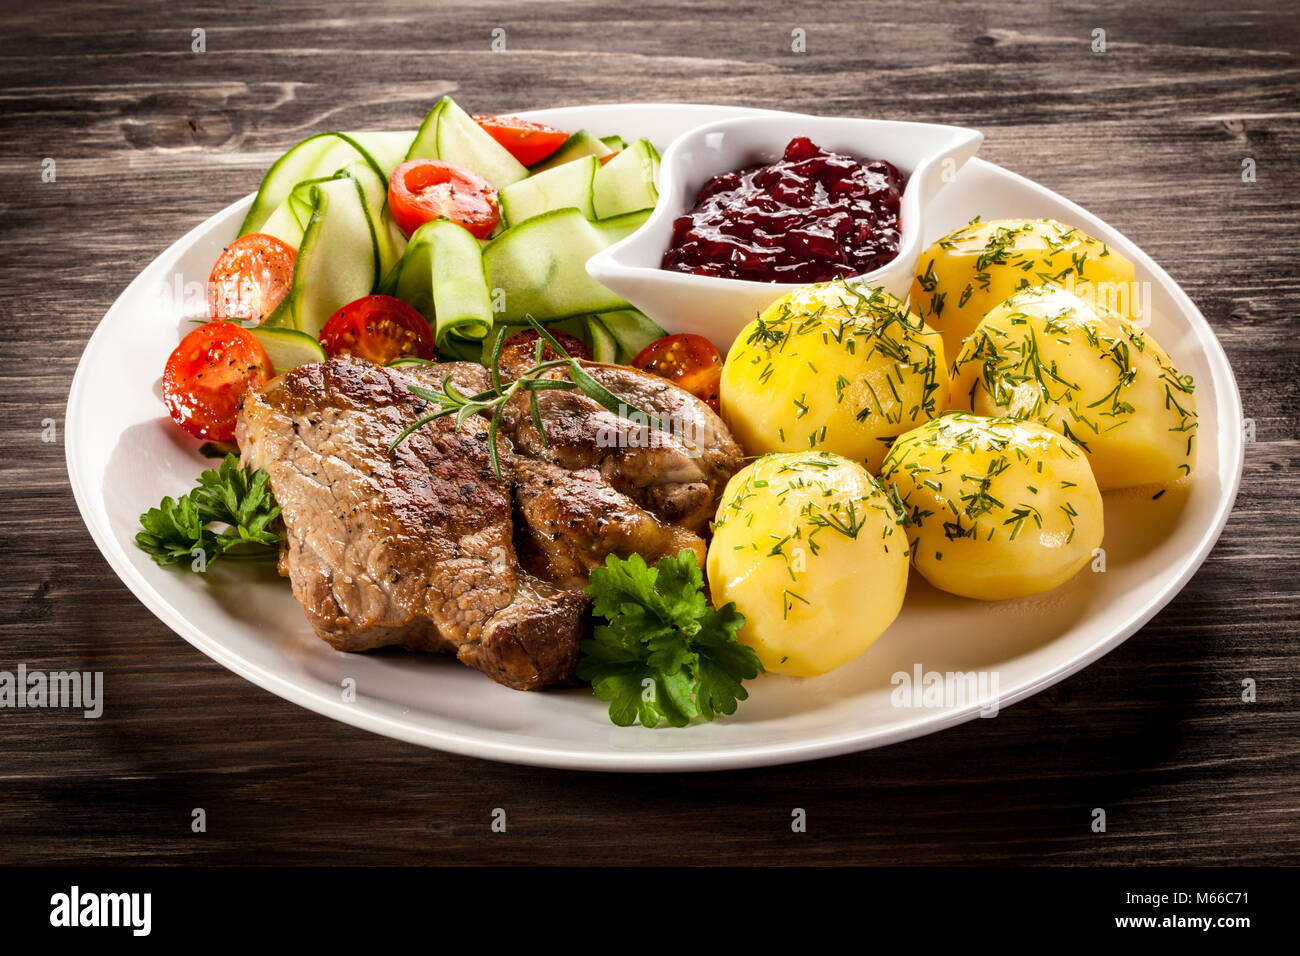 Ried Steak, gekochte Kartoffeln und Gemüse Salat auf hölzernen Tisch  Stockfotografie - Alamy